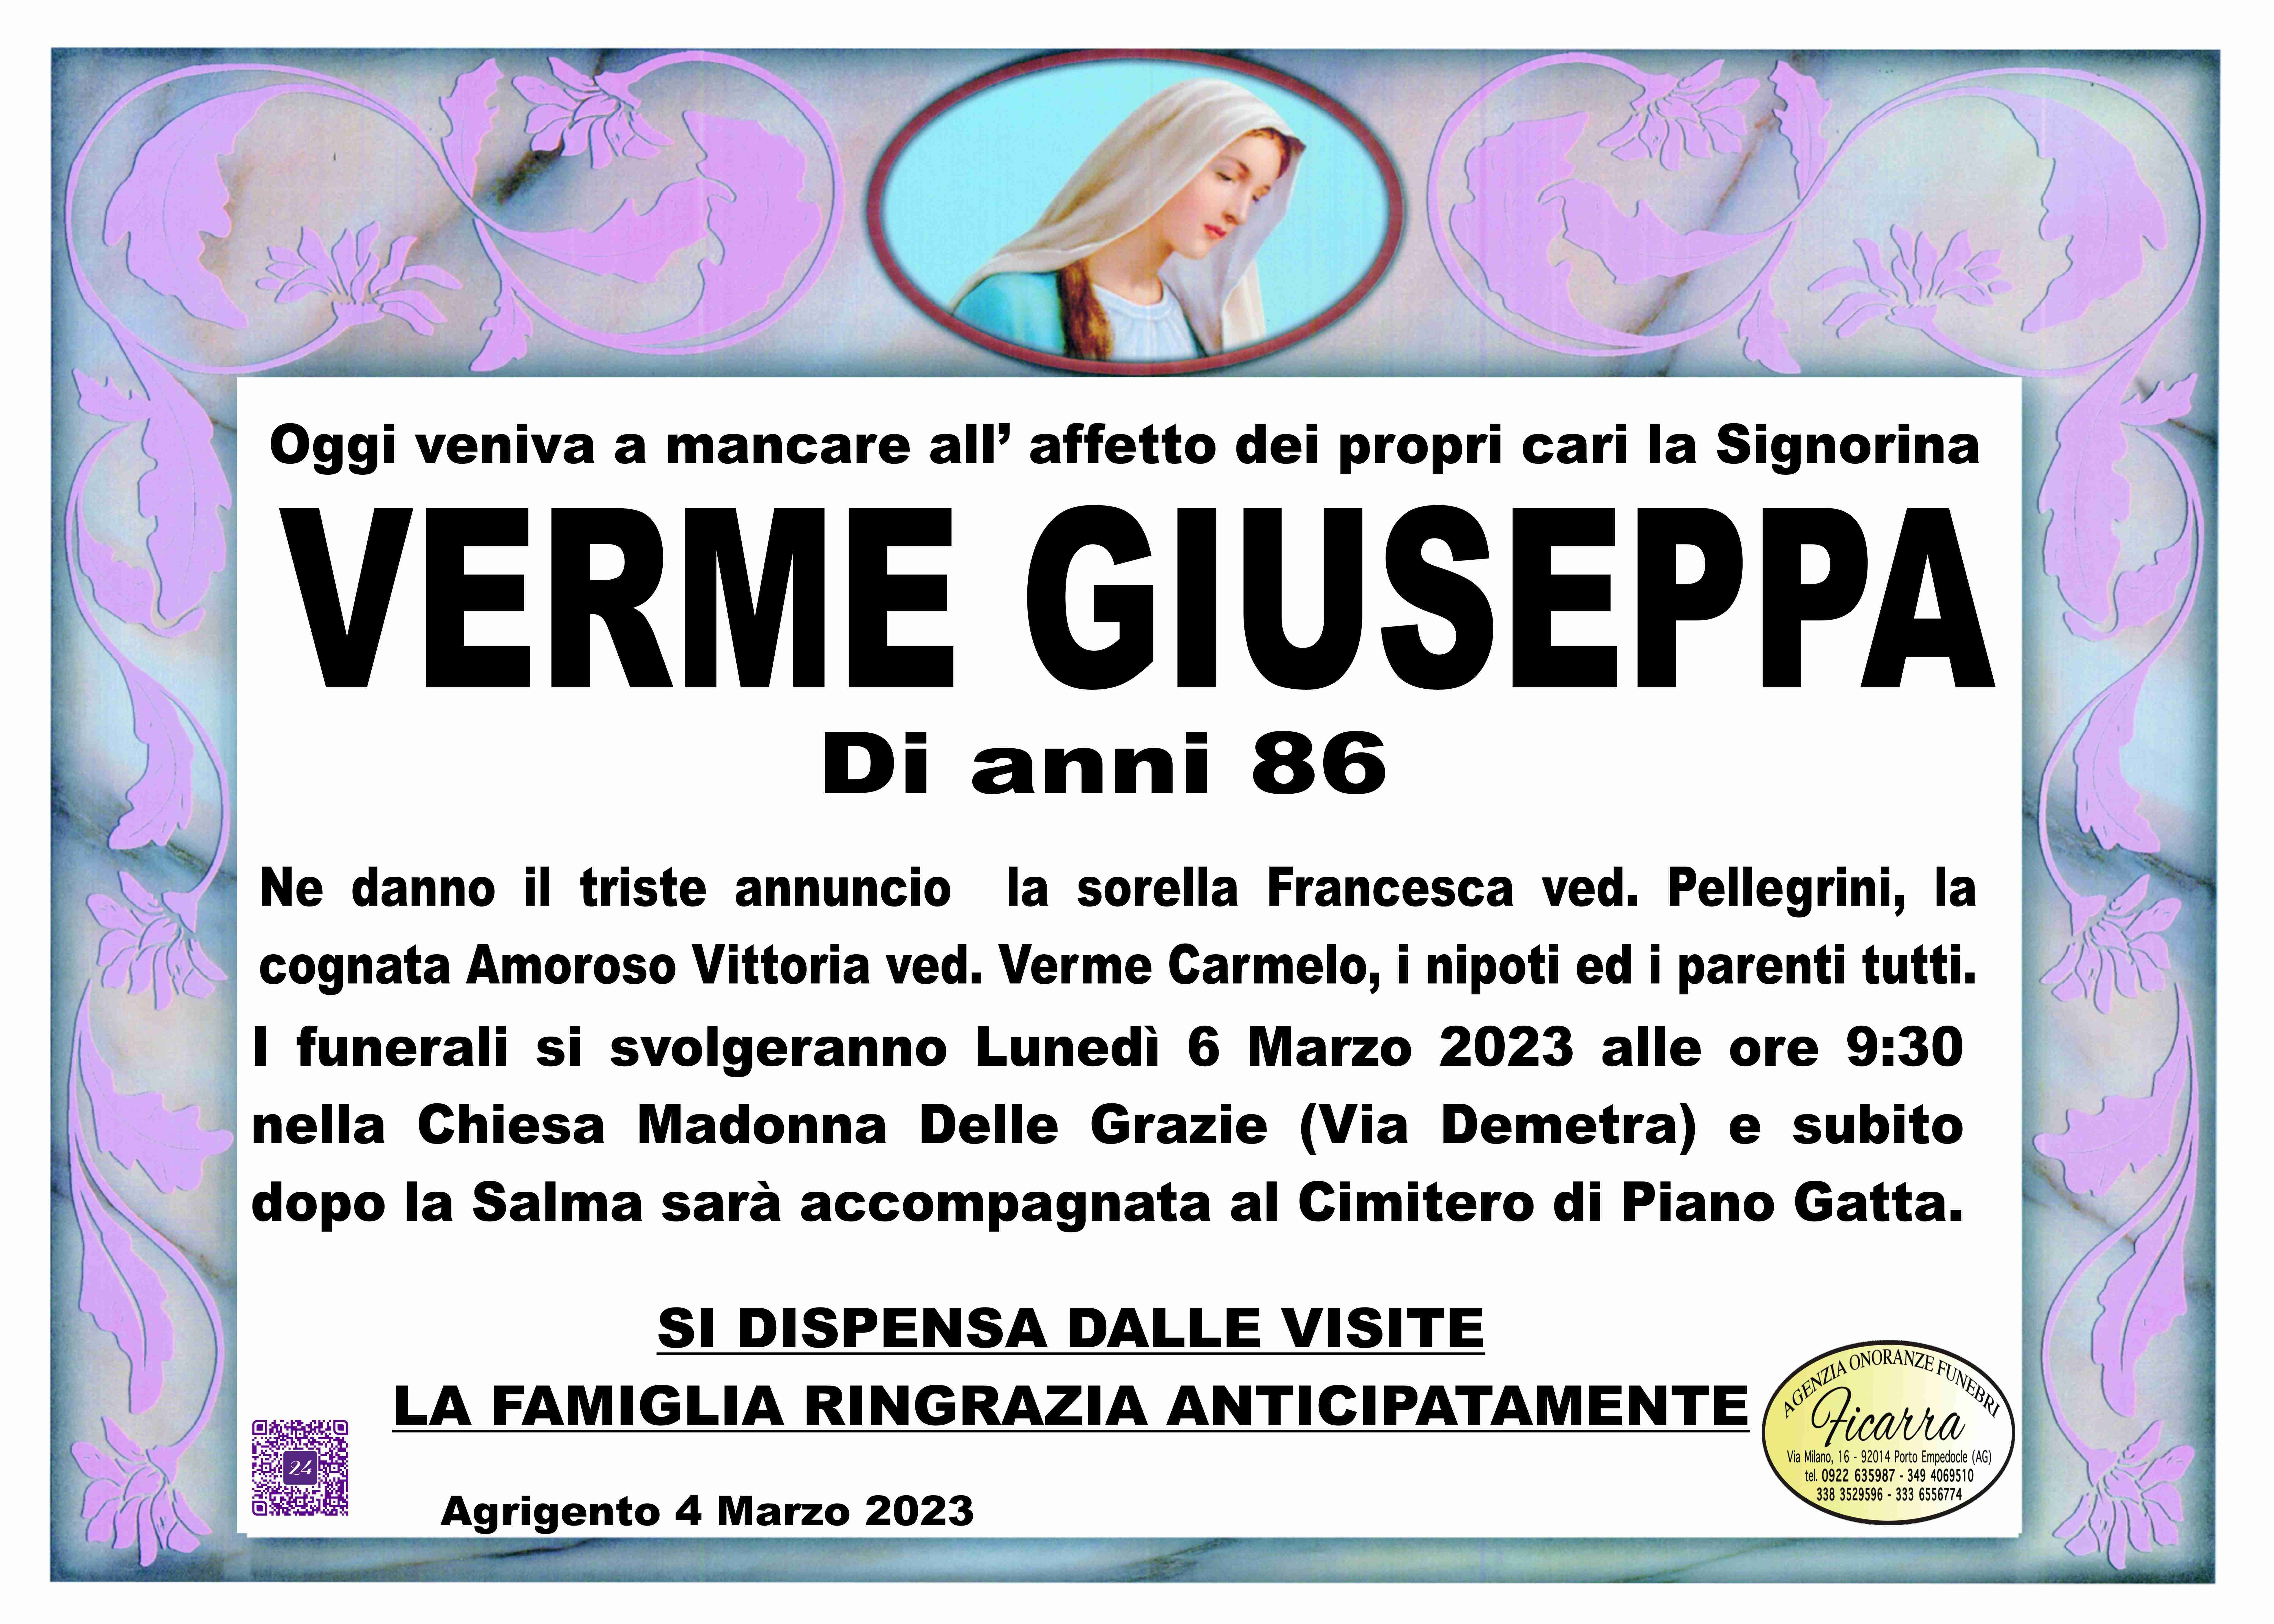 Giuseppa Verme